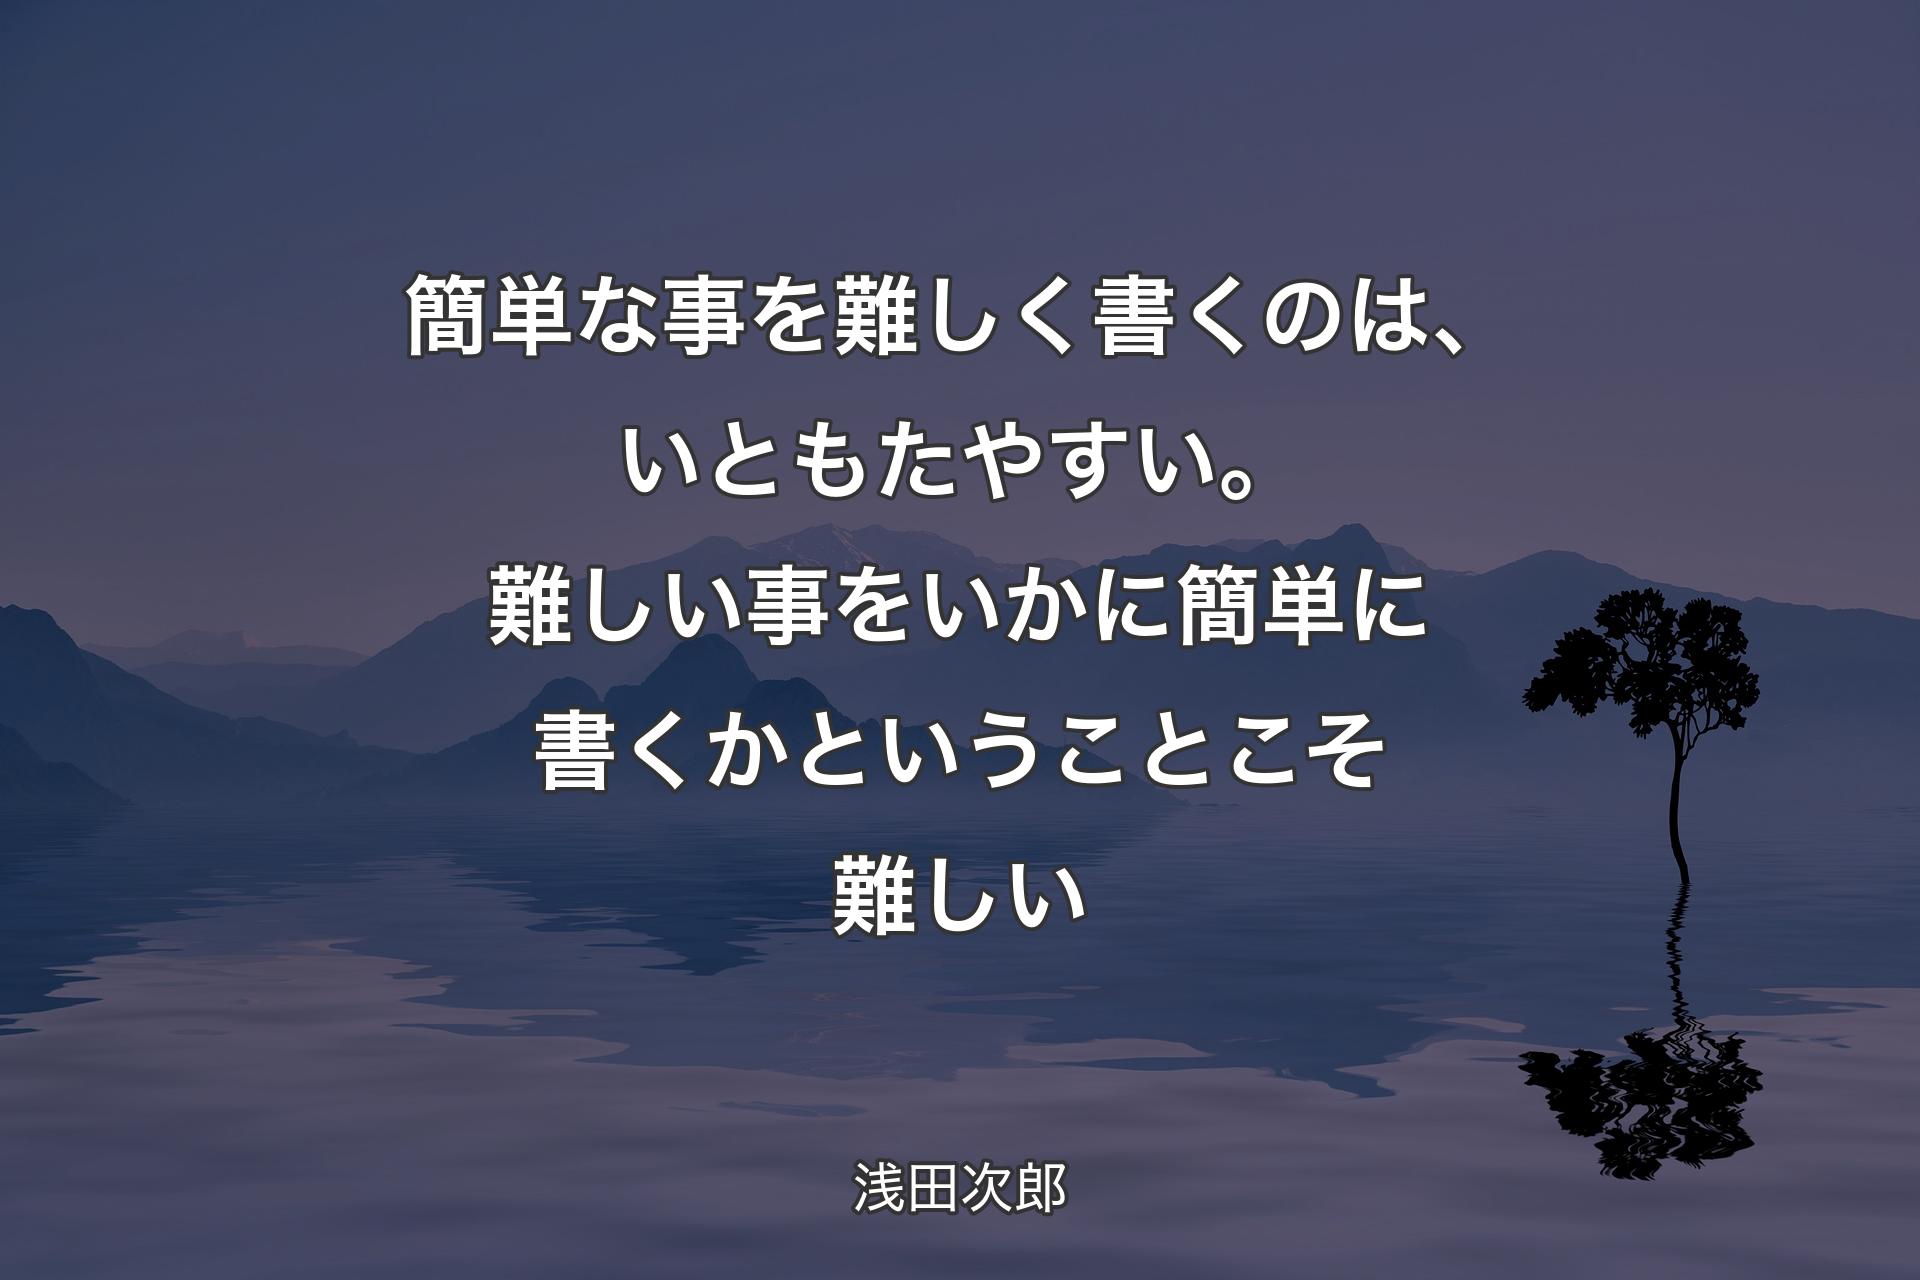 【背景4】簡単な事を難しく書くのは、いともたやすい。難しい事をいかに簡単に書くかということこそ難しい - 浅田次郎